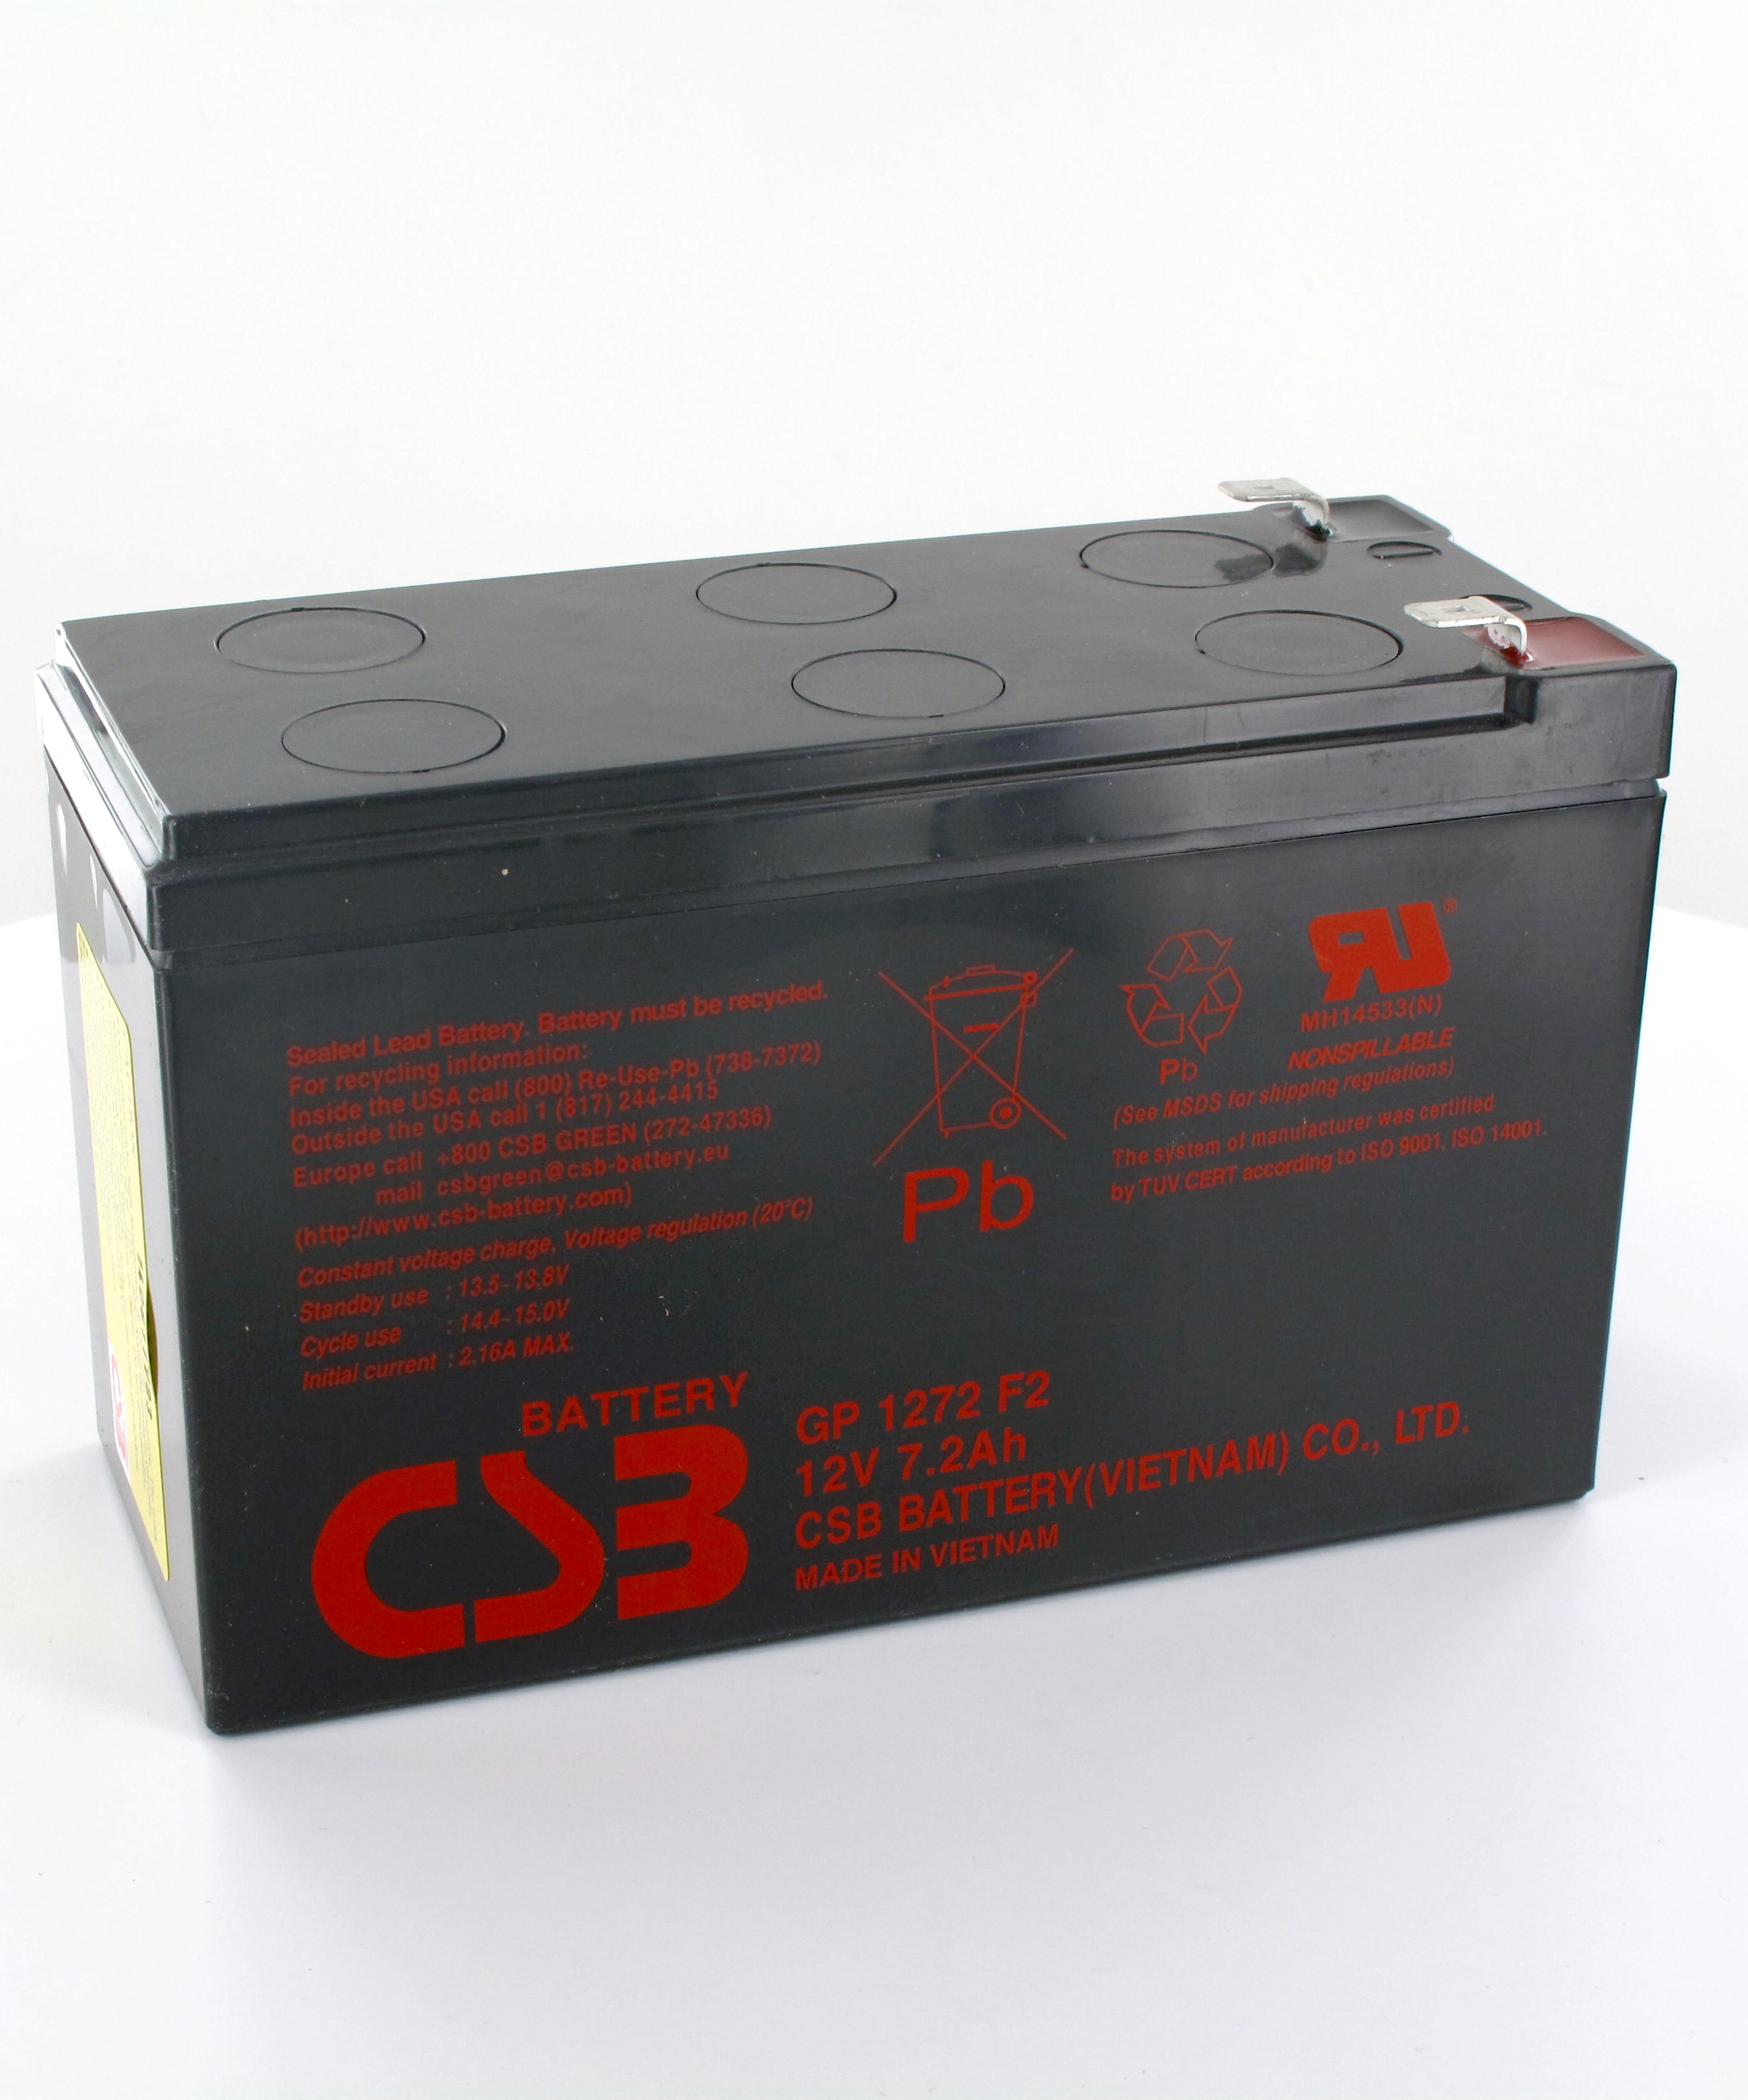 Батарея f2 12v. Аккумулятор CSB GP 1272. CSB GP 1272 f2. Аккумулятор CSB gp1272 f2 12v. Аккумуляторная батарея CSB gp1272 f2.